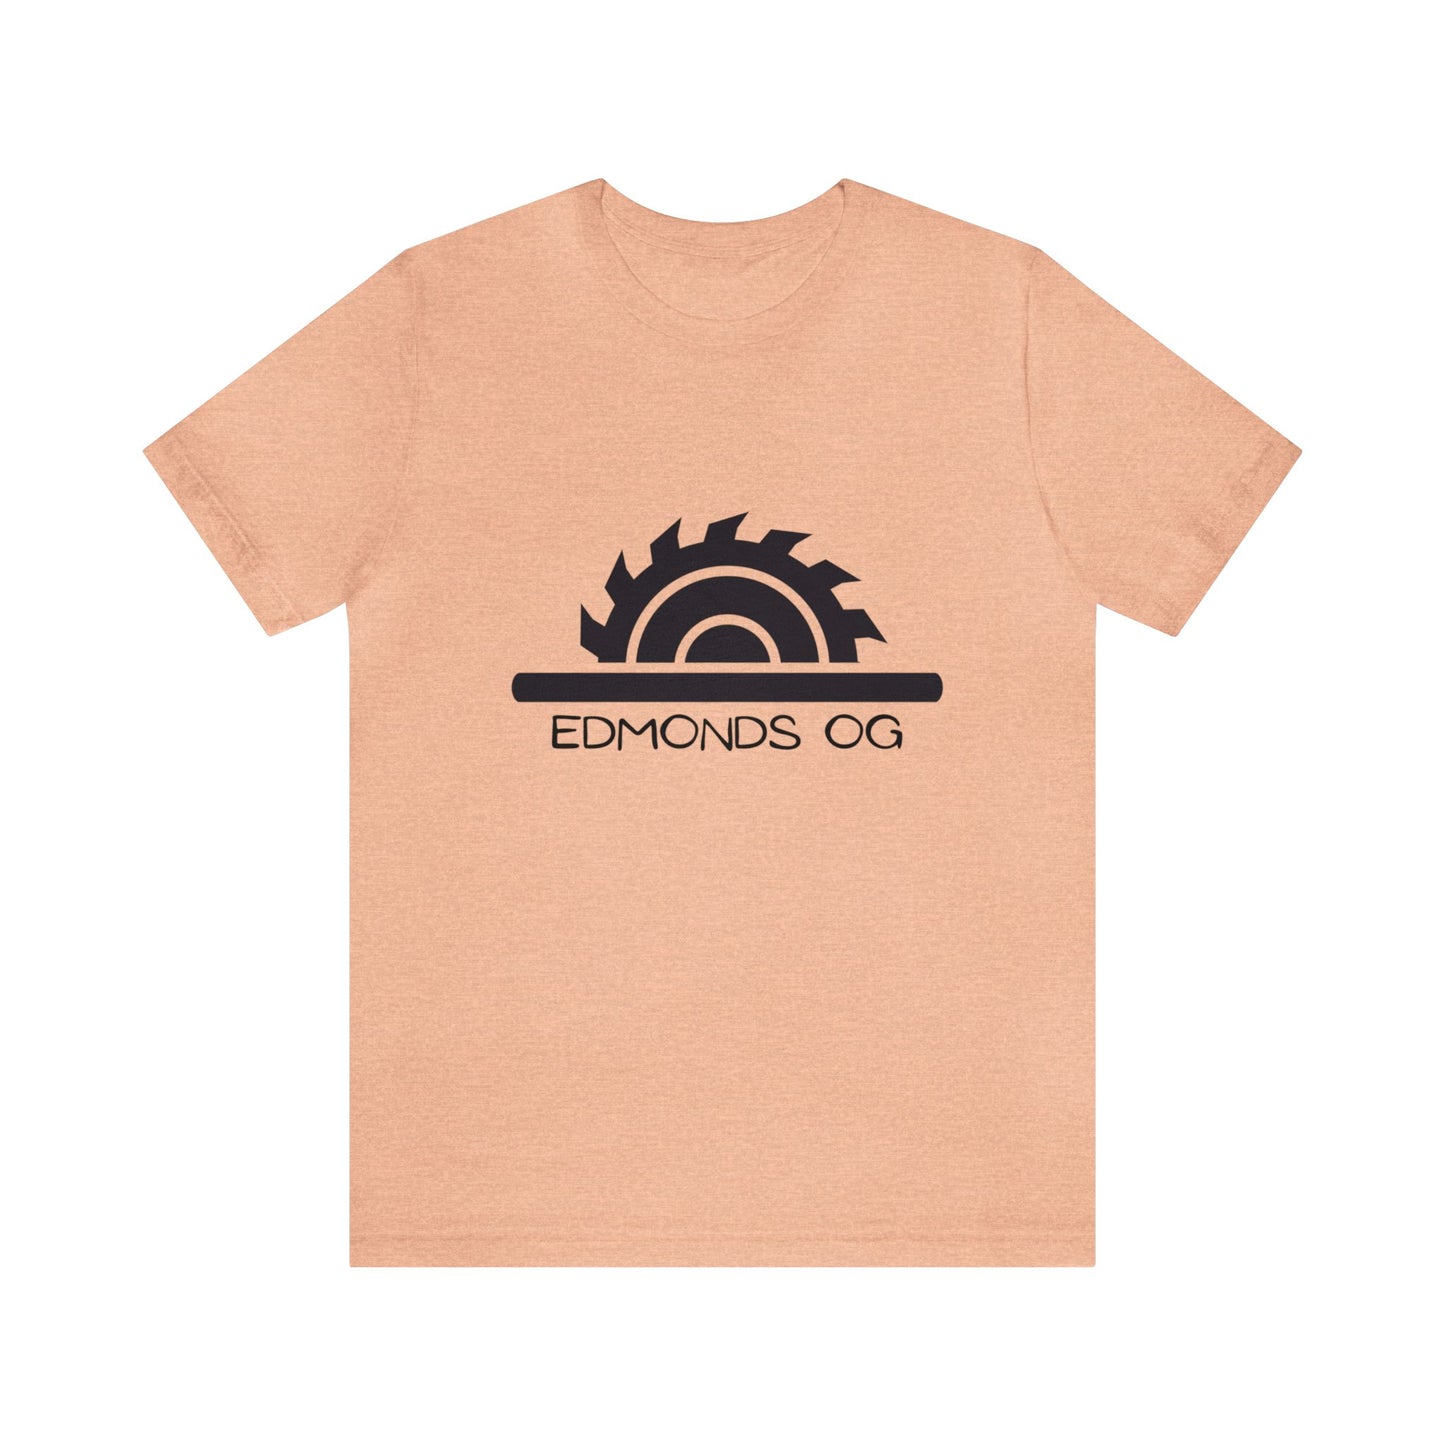 Edmonds OG T-shirt